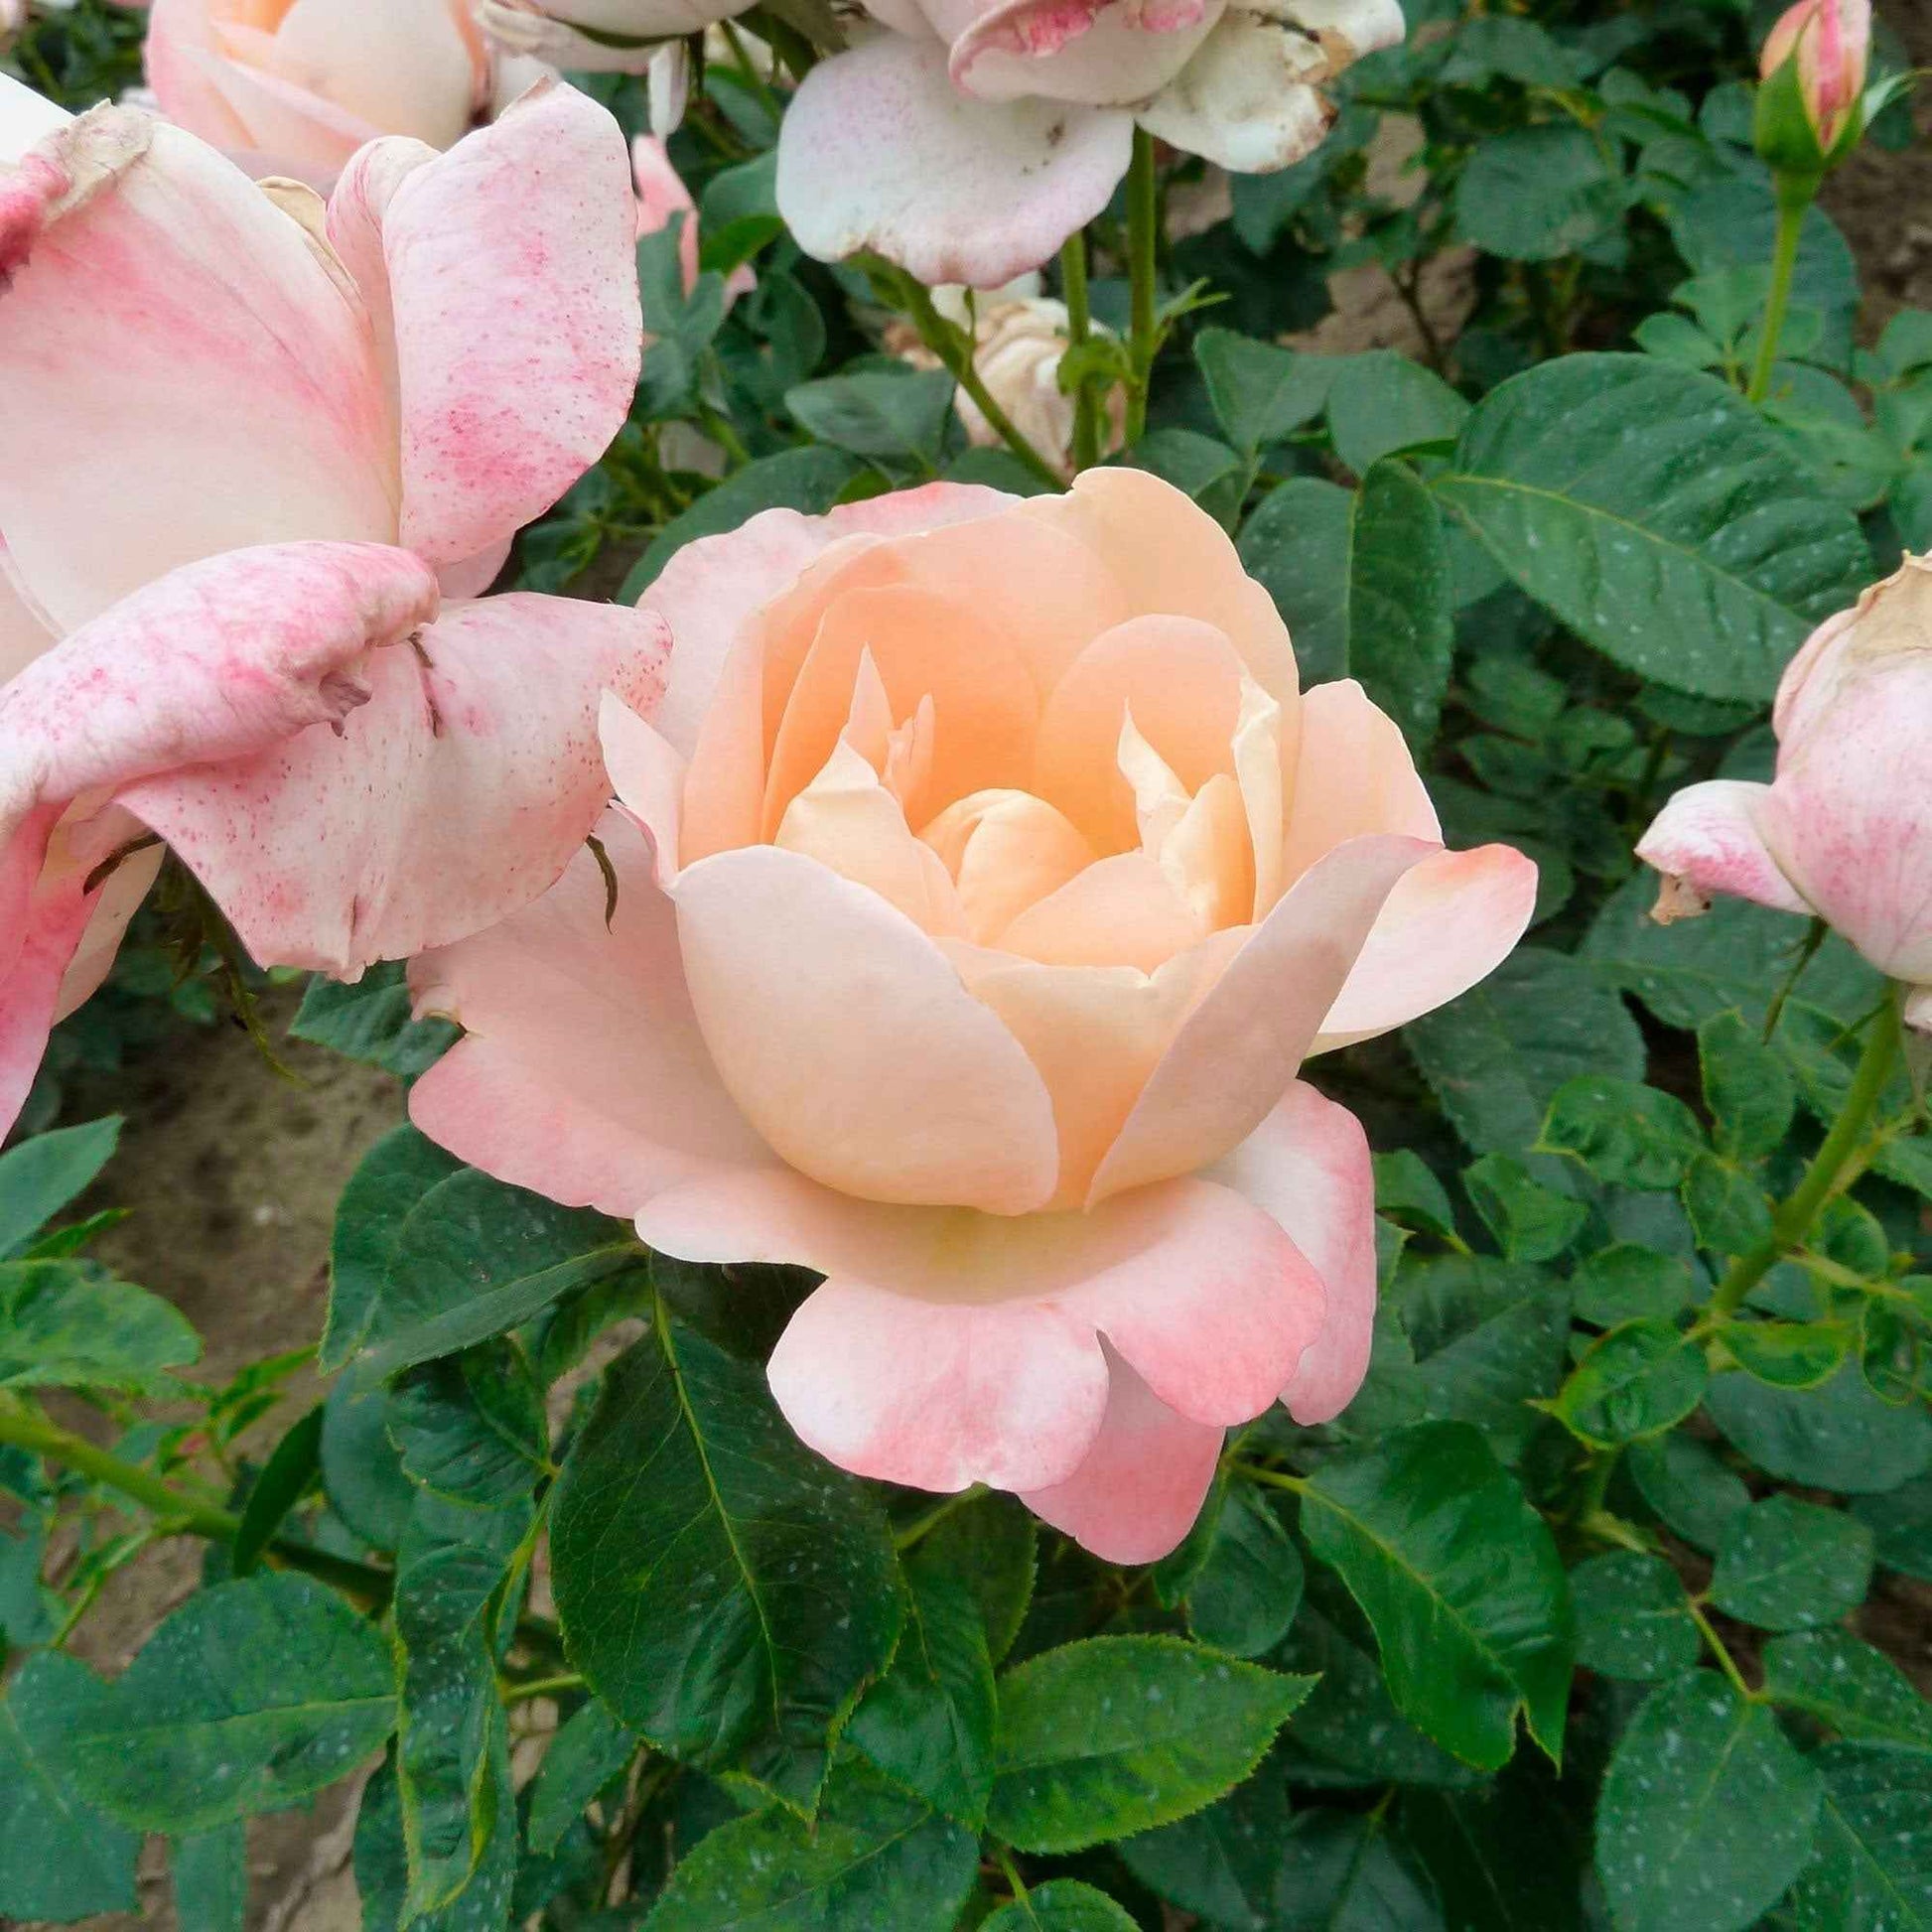 3x Grootbloemige roos Rosa Isabelle Autissier ® Geel-Roze - Bare rooted - Winterhard - Grootbloemige rozen